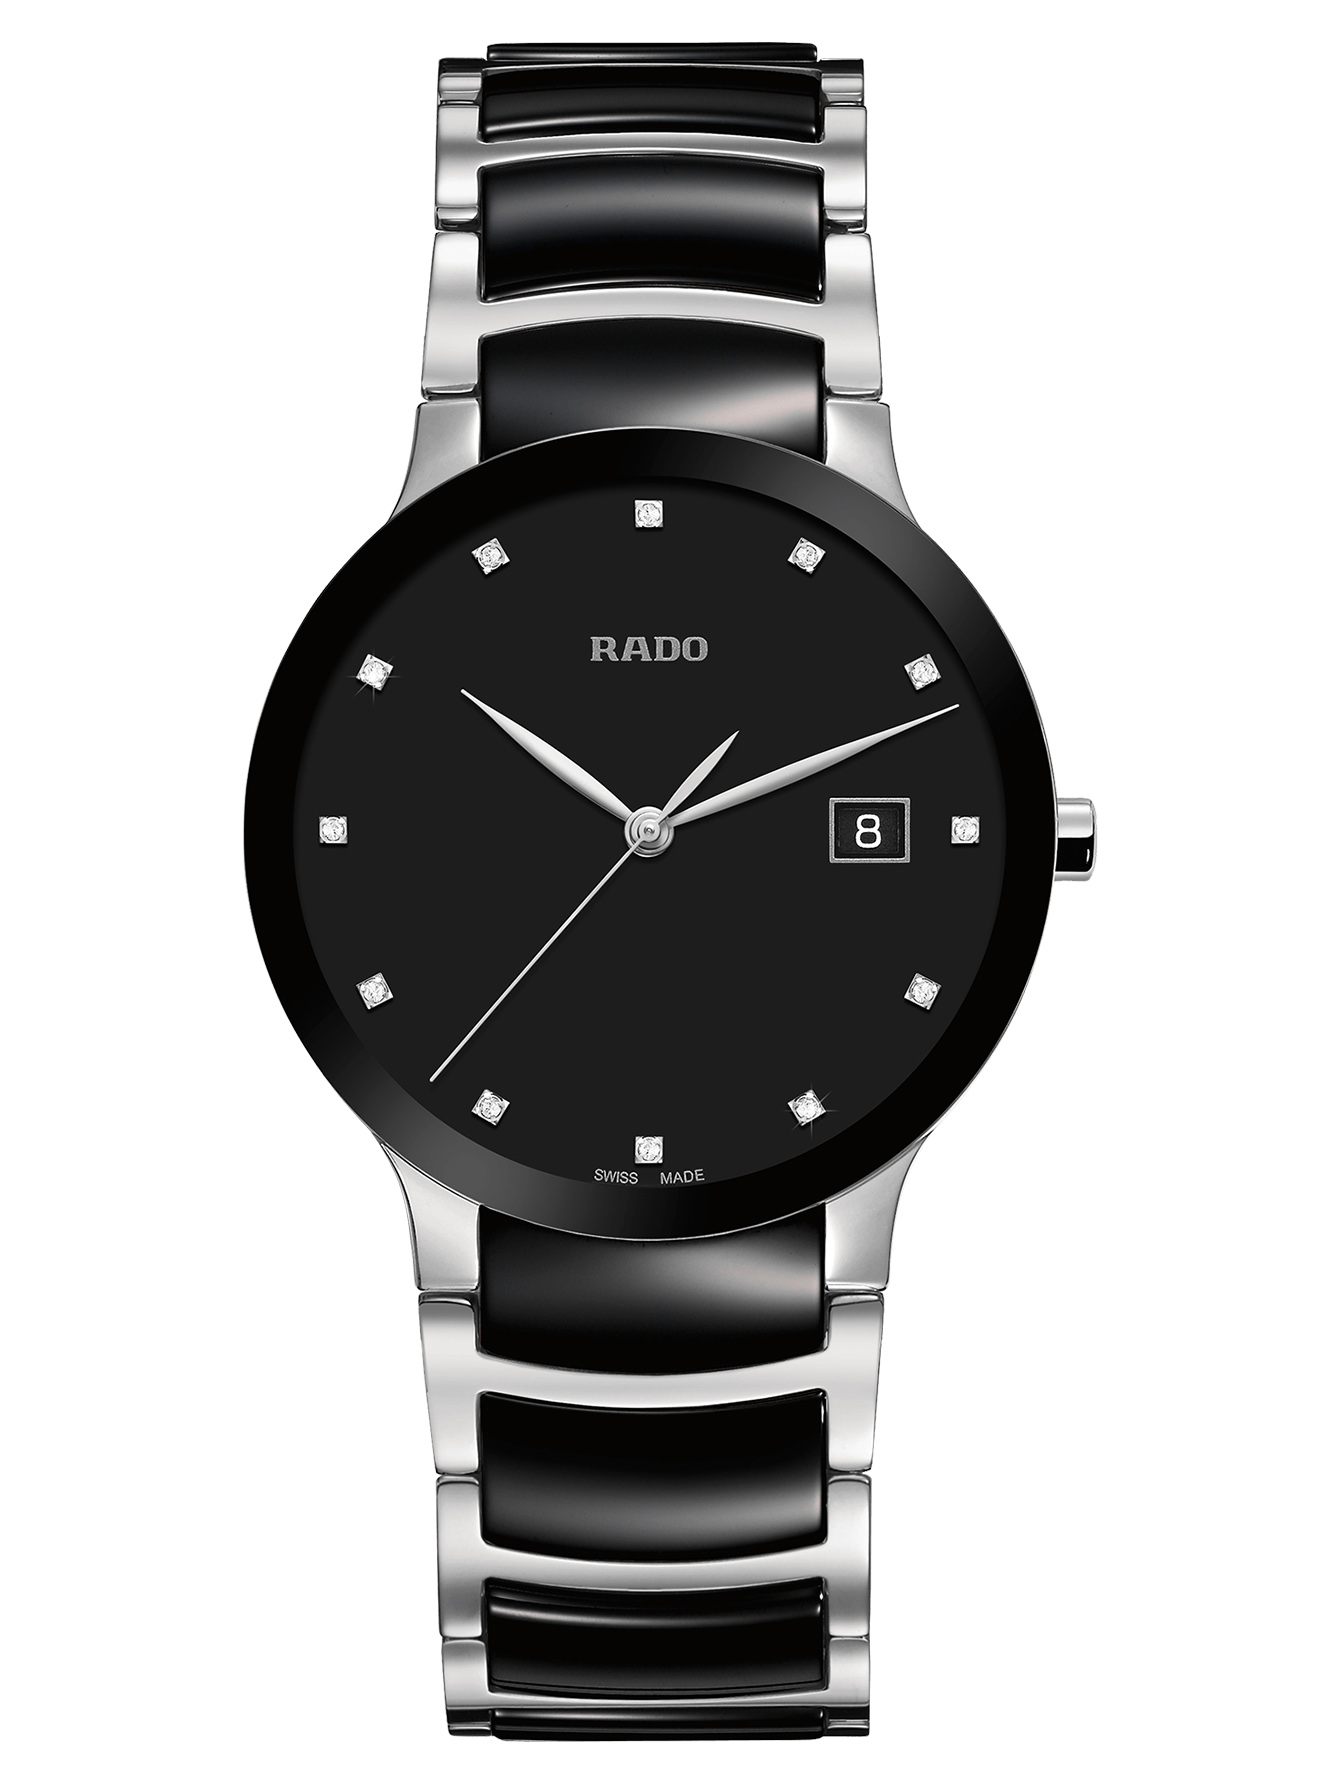 Мужские часы радо оригинал цены. Rado r30935172. Часы Rado Centrix r30930712. Часы Rado Centrix r30179114. Часы Rado 115.0934.3.